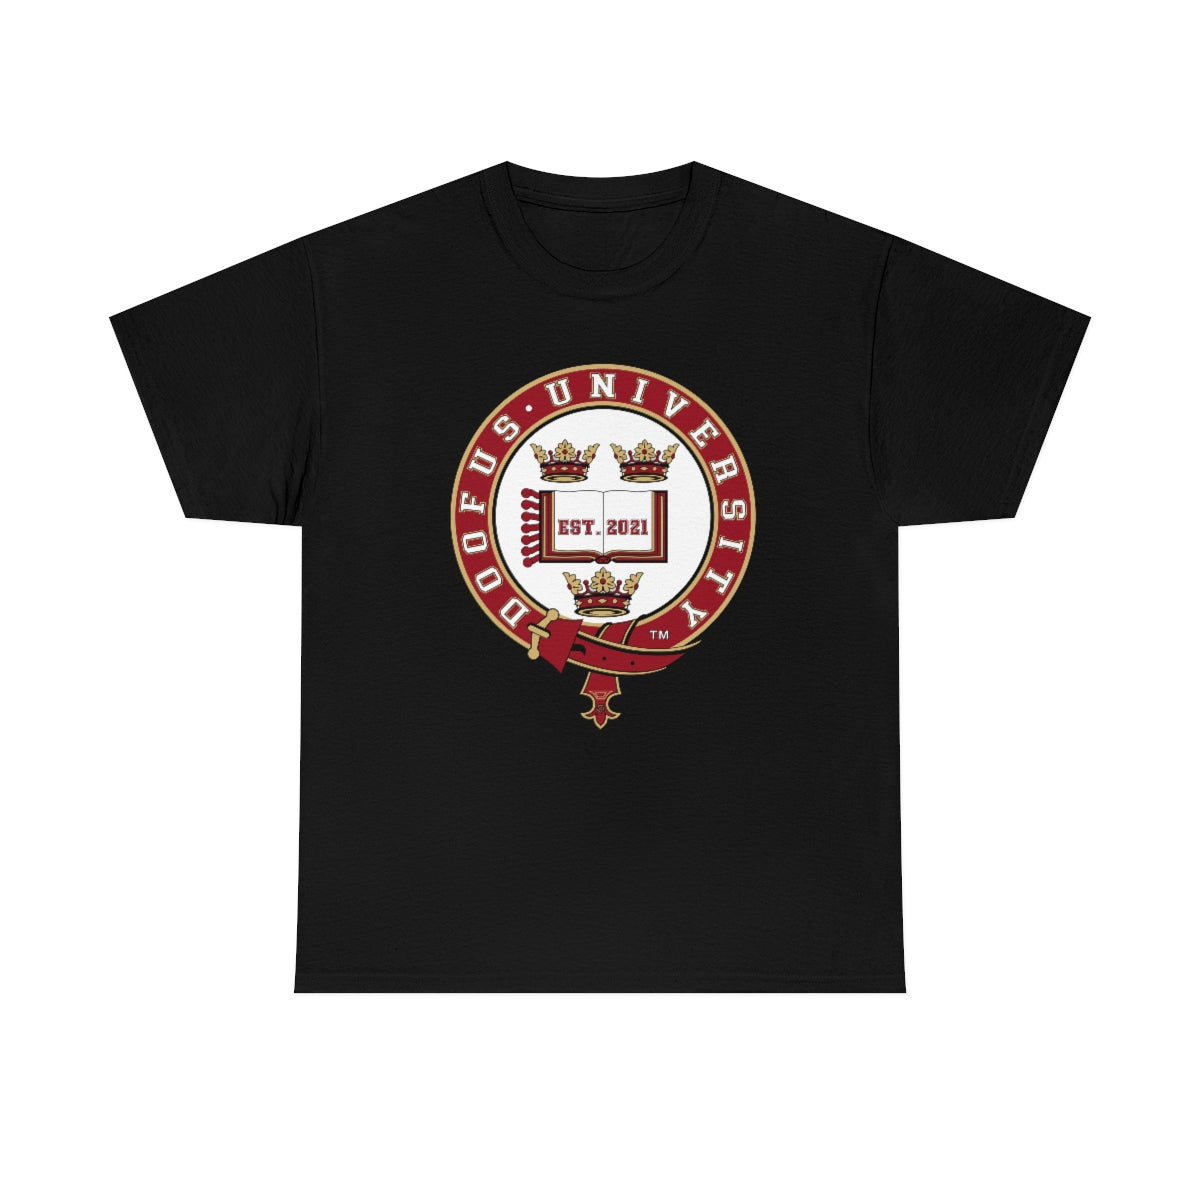 Doofus University™ Oxford University Style Unisex  Funny Gag Gift Idea  Humorous T Shirt